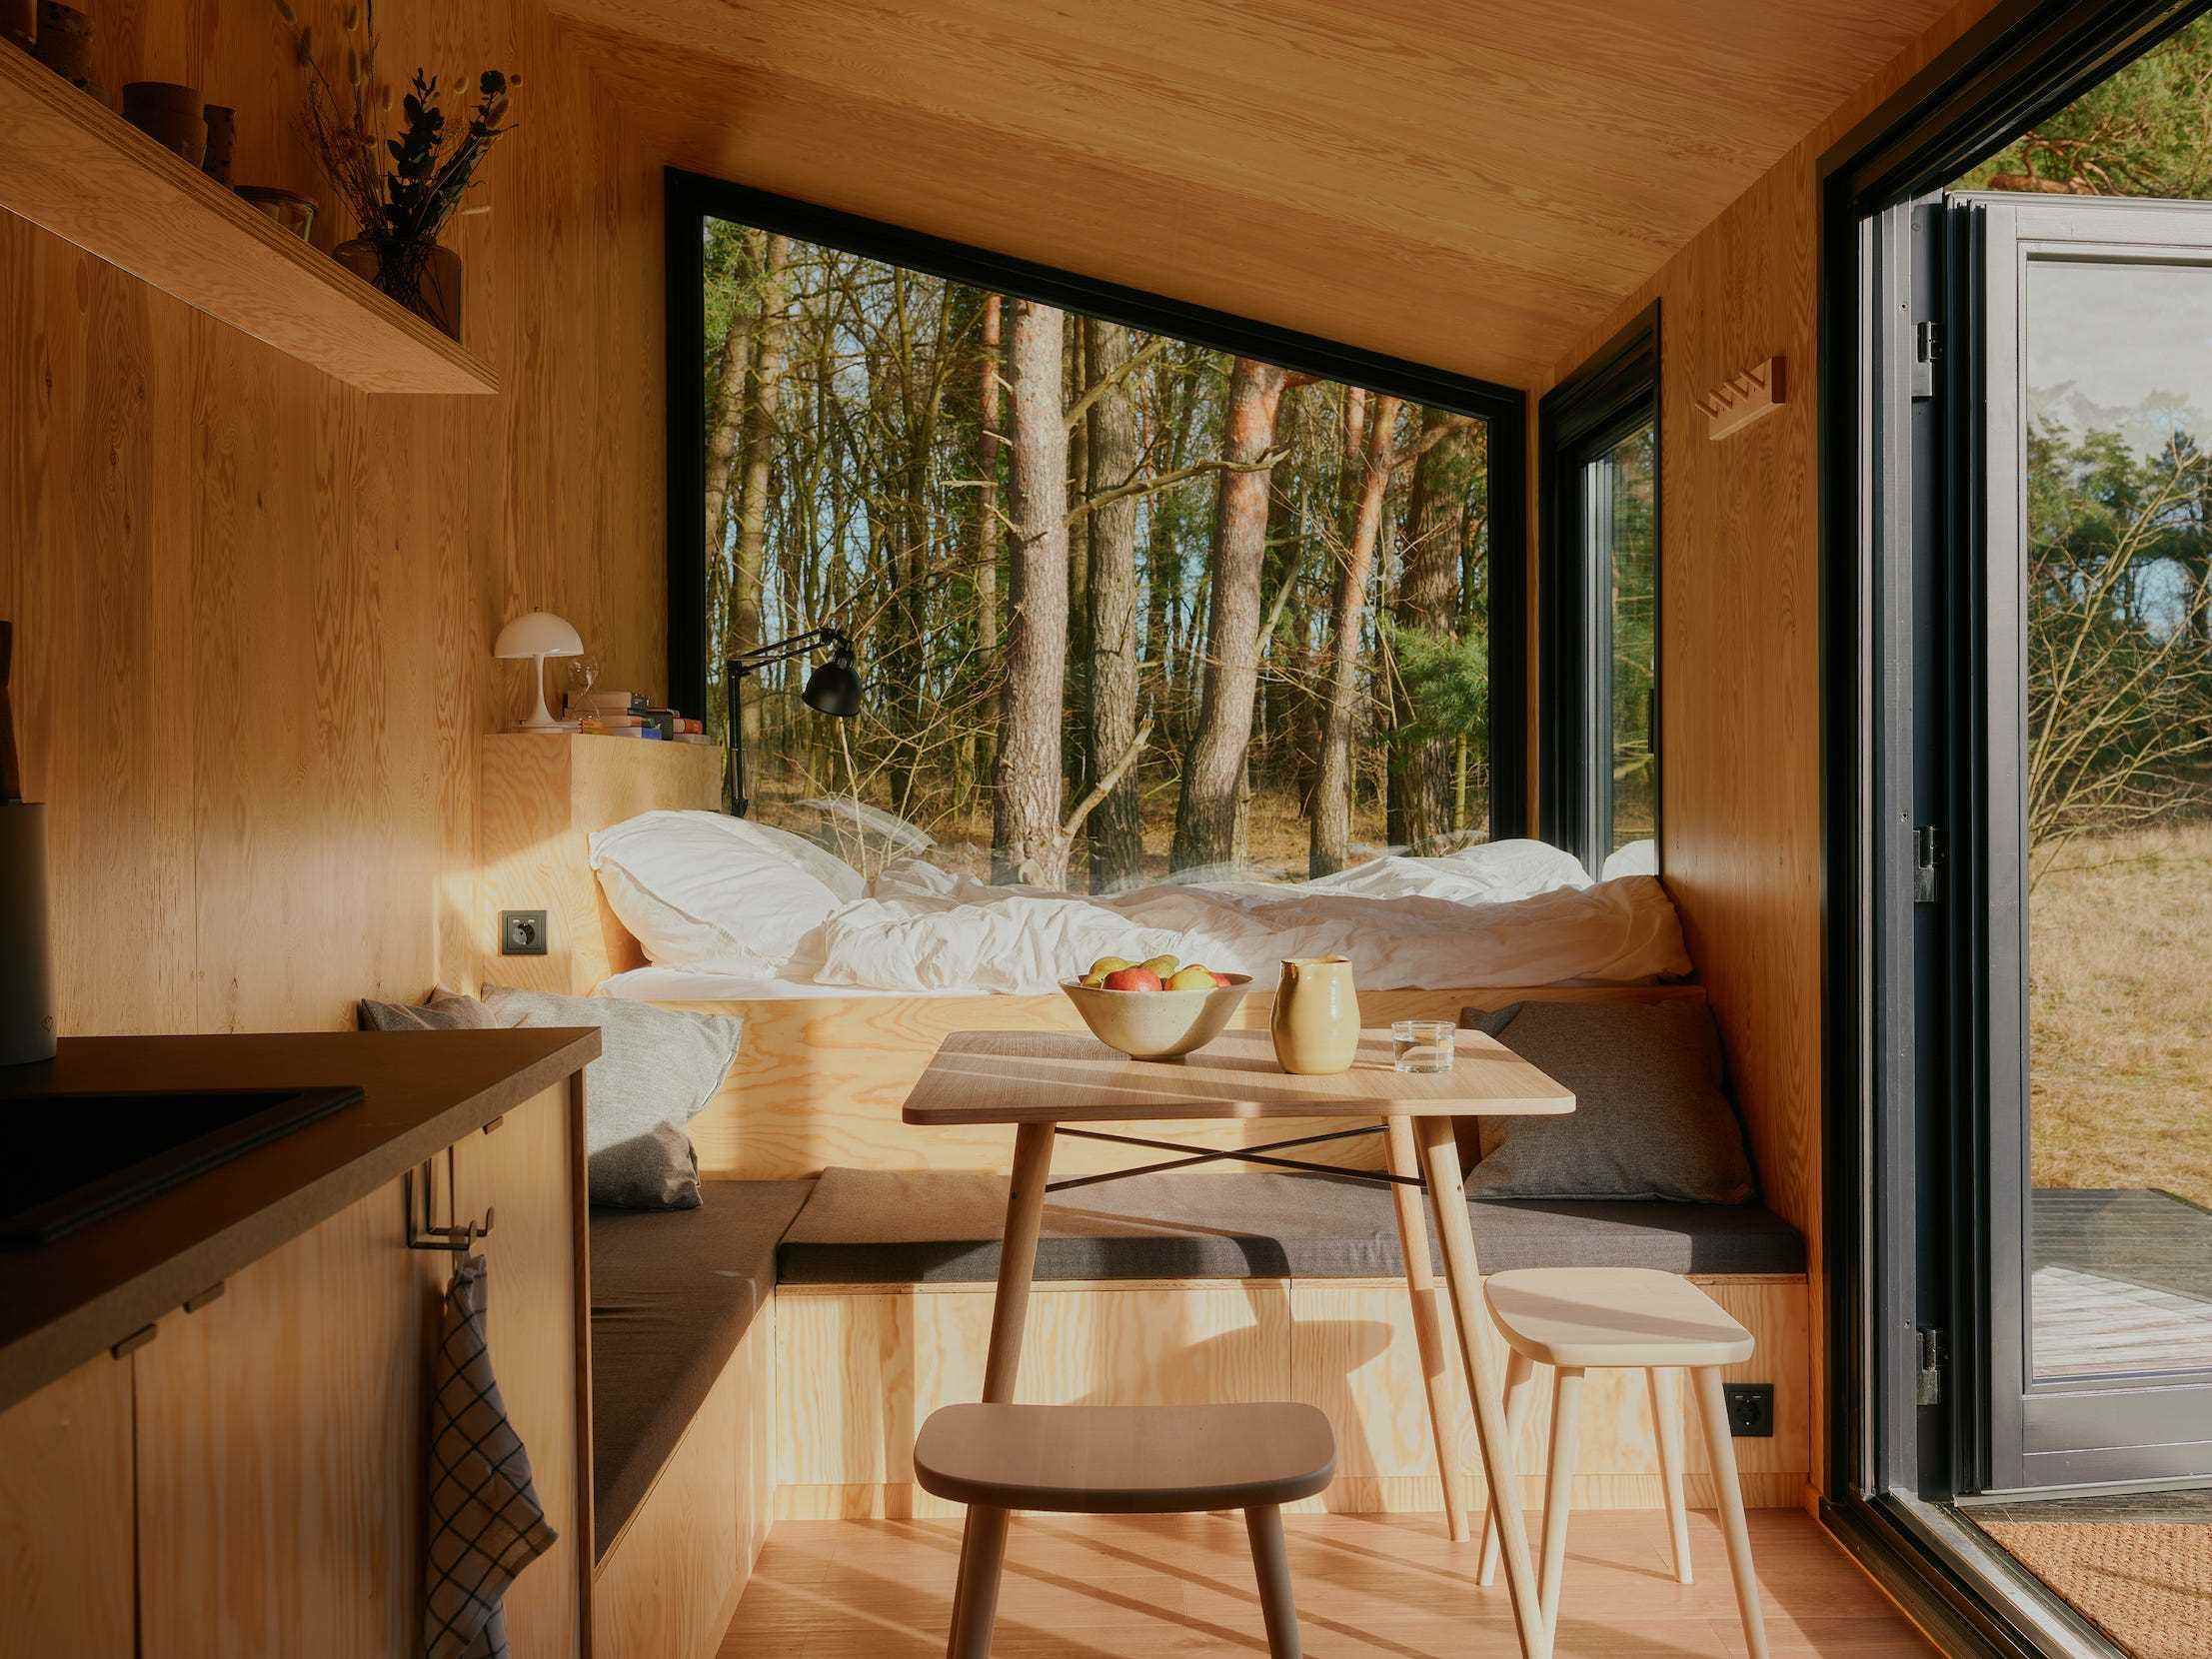 Ein Bett, eine Küche, ein Tisch mit Stühlen und Fenster, die die Natur draußen zeigen